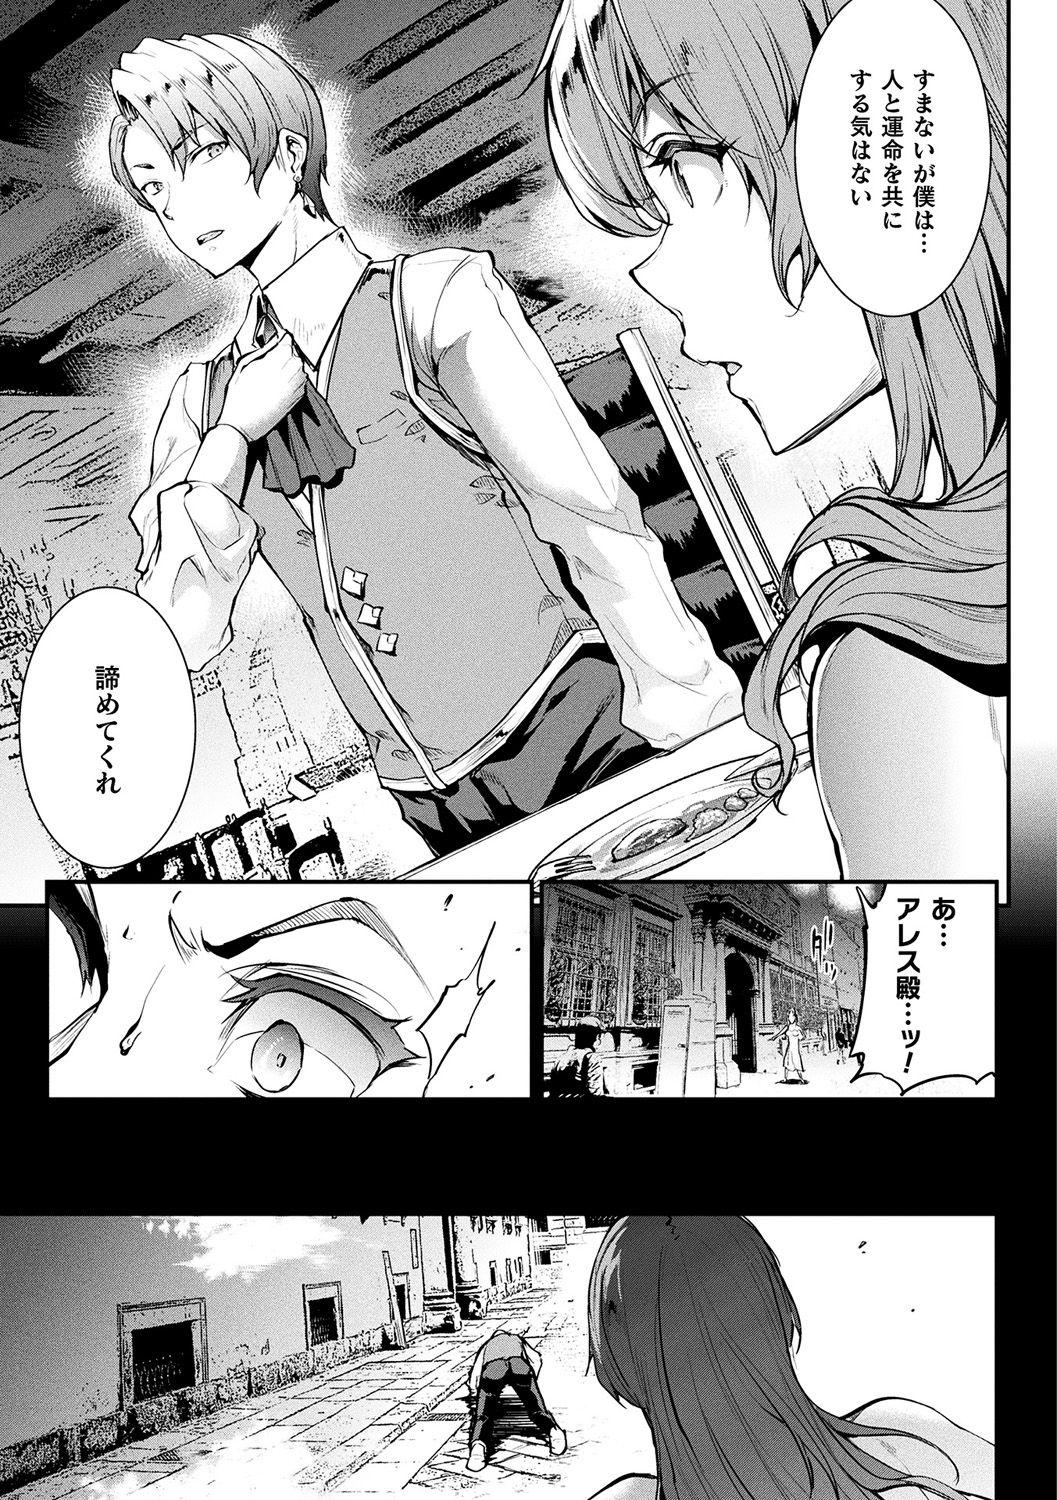 [Erect Sawaru] Raikou Shinki Igis Magia II -PANDRA saga 3rd ignition- + Denshi Shoseki Tokuten Digital Poster [Digital] 118